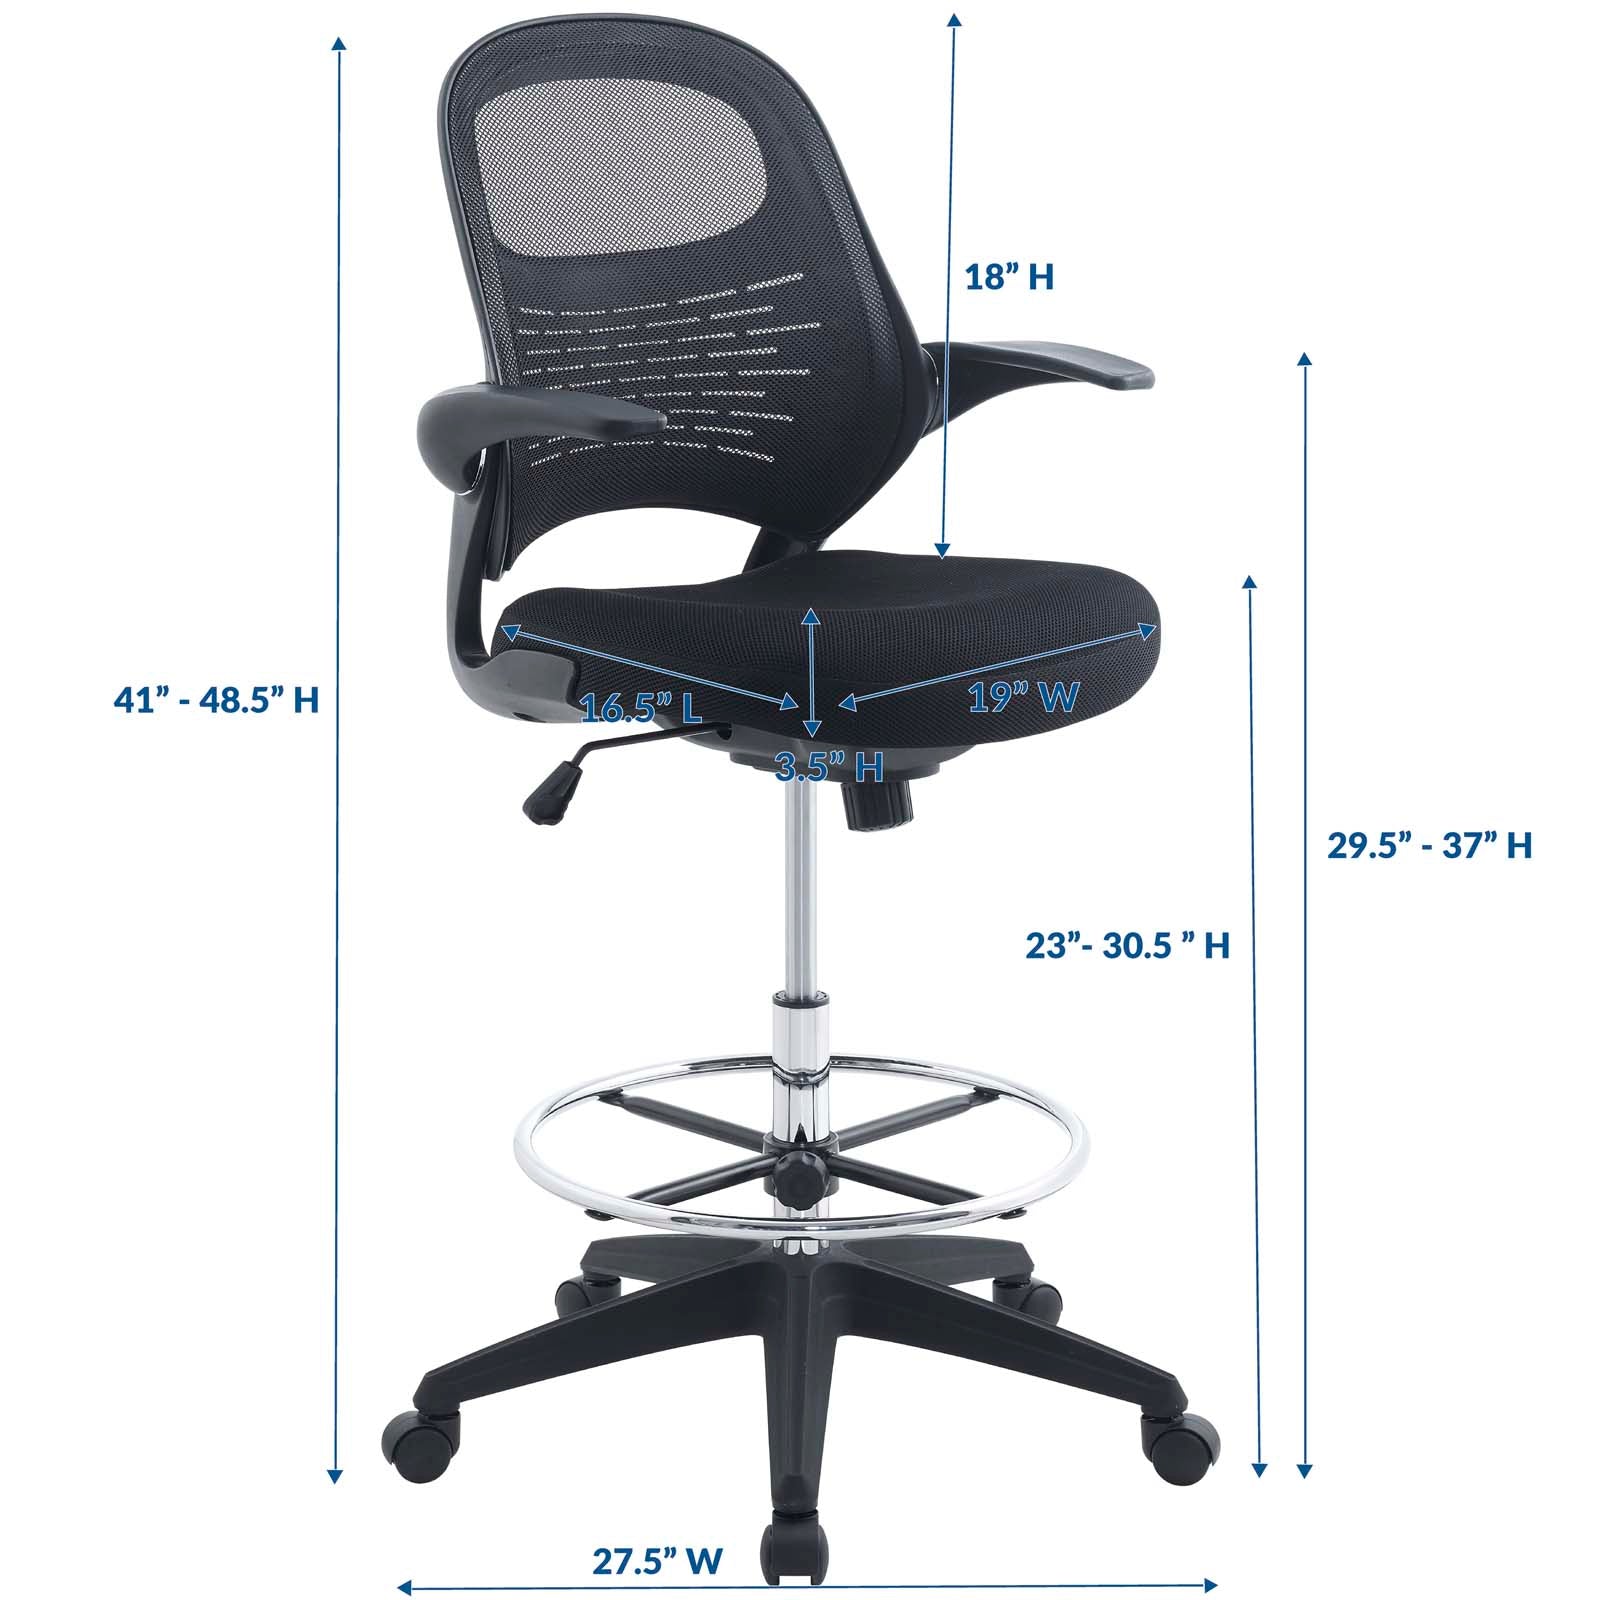 Home Office Chair Foot Rest Modern Leg Rest Design Mesh Waterproof